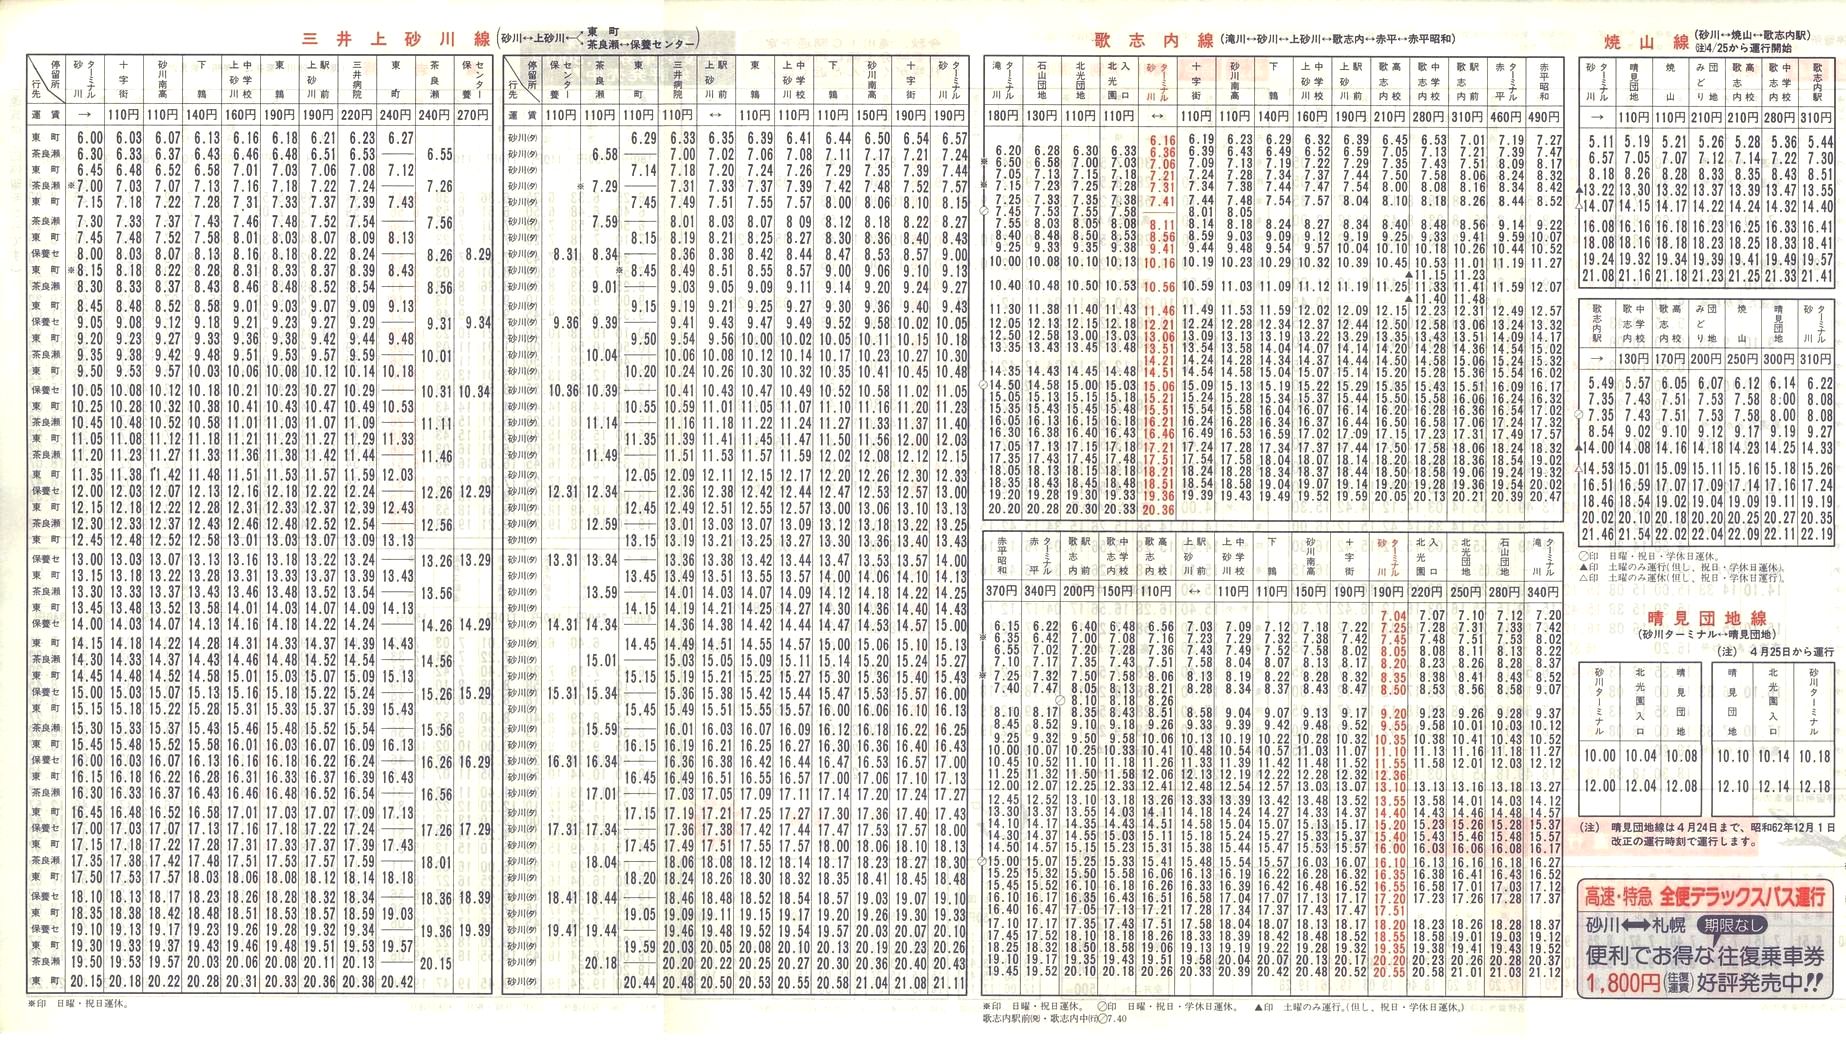 1988-04-10改正_北海道中央バス(空知)_砂川管内線時刻表裏面